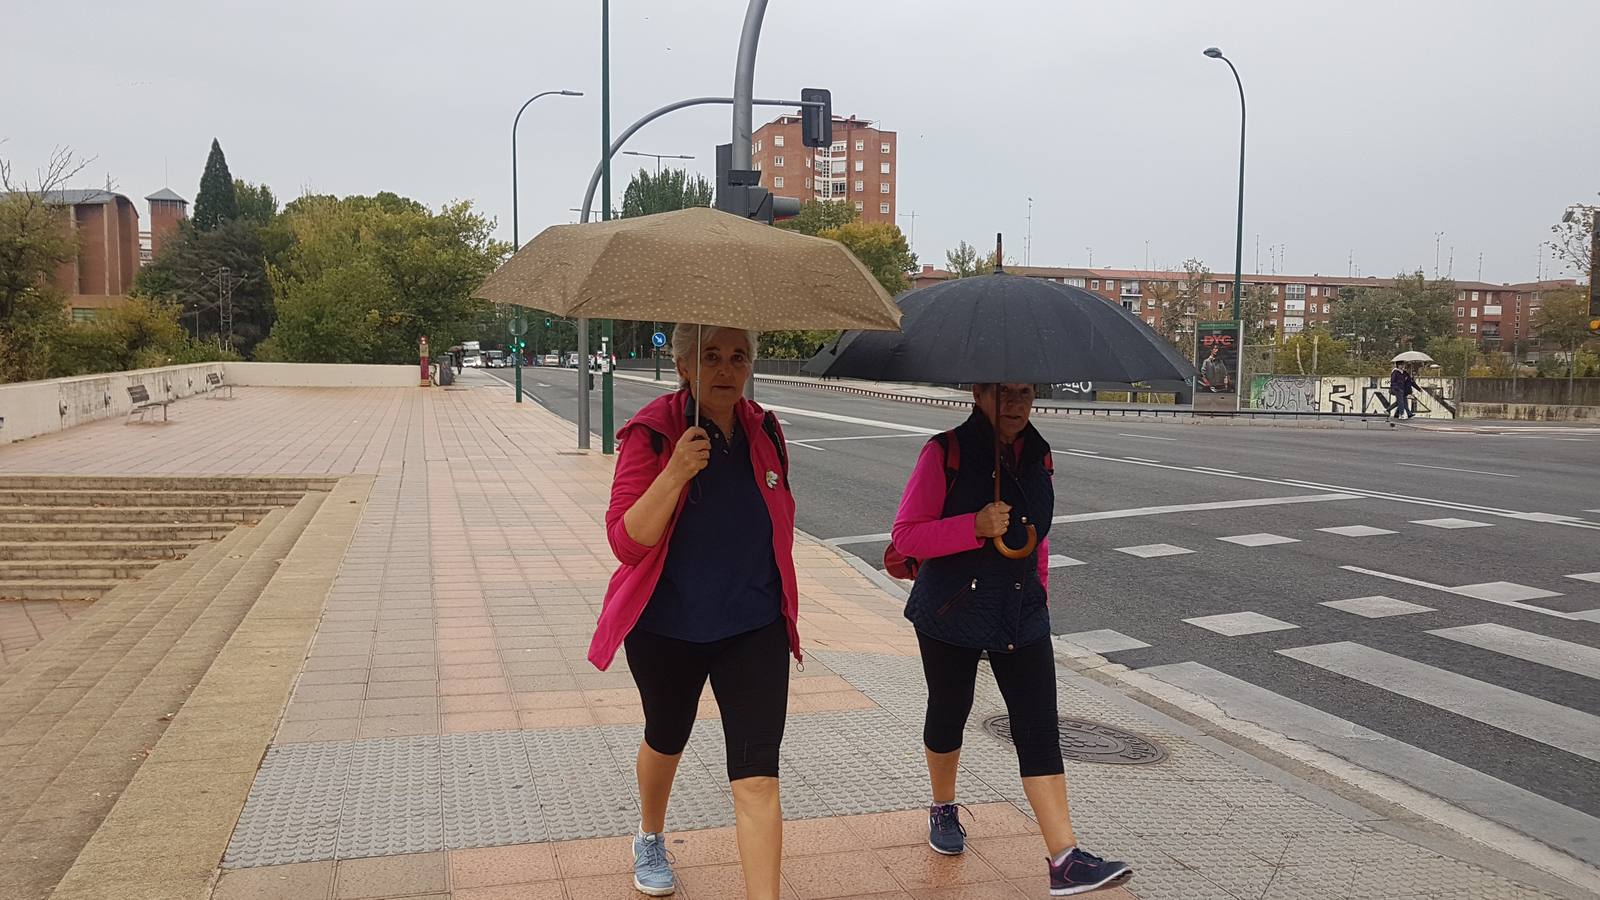 Llueve en Valladolid